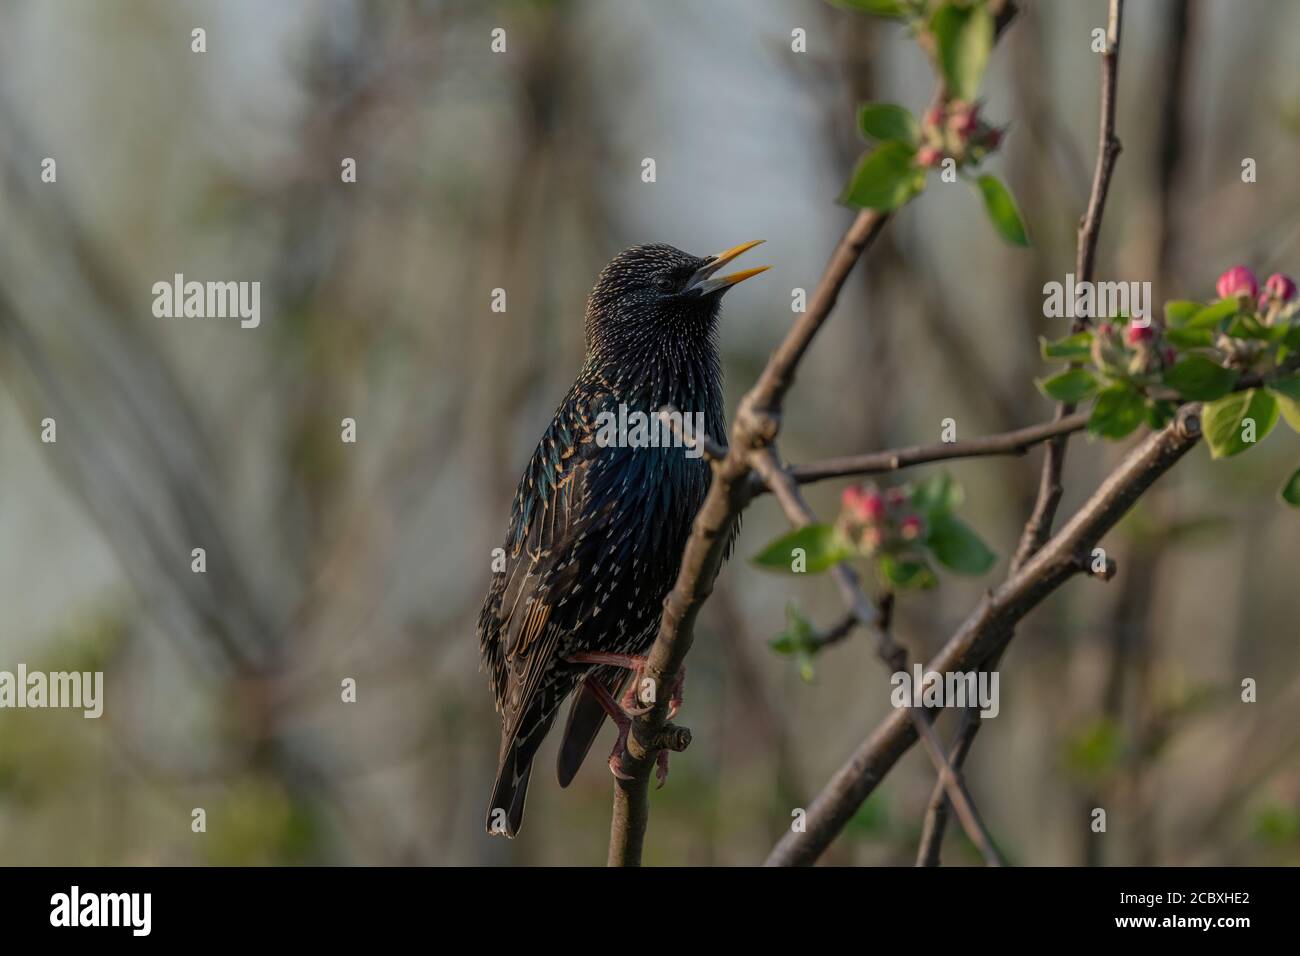 Adult Starling, Sturnus vulgaris, in breeding plumage, perched in apple tree. Stock Photo